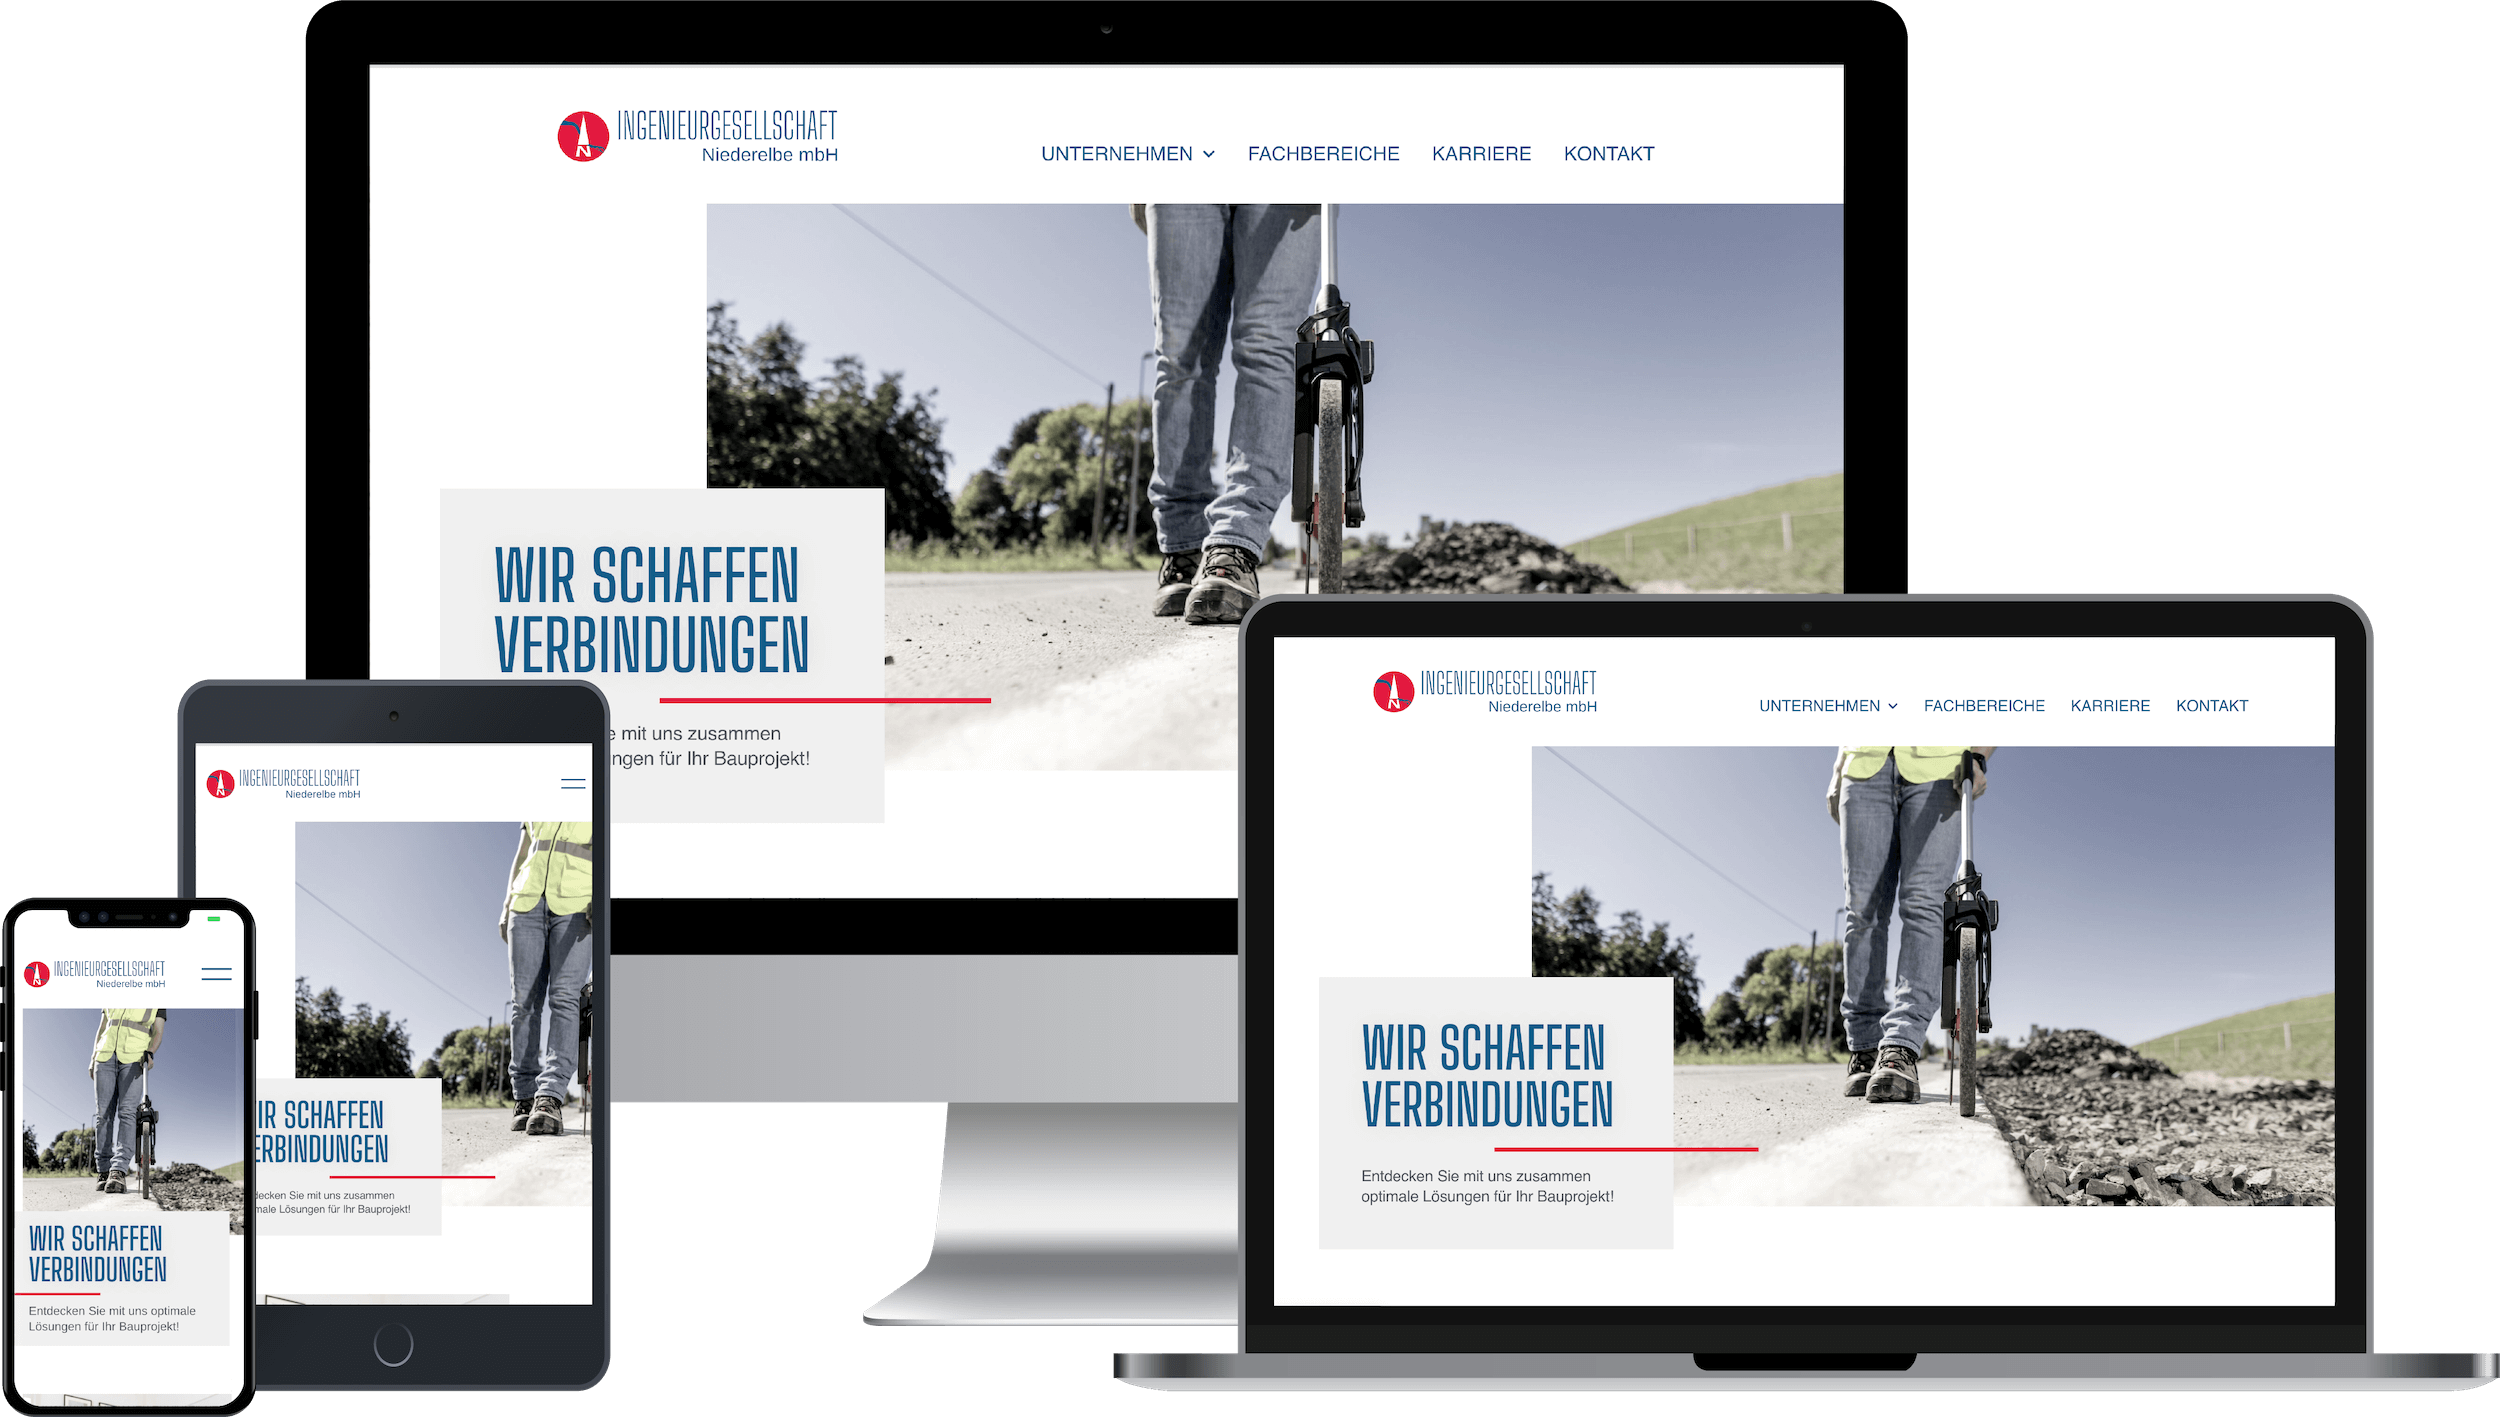 Siegel Websites Webdesign Stade Ingenieurgesellschaft Niederelbe